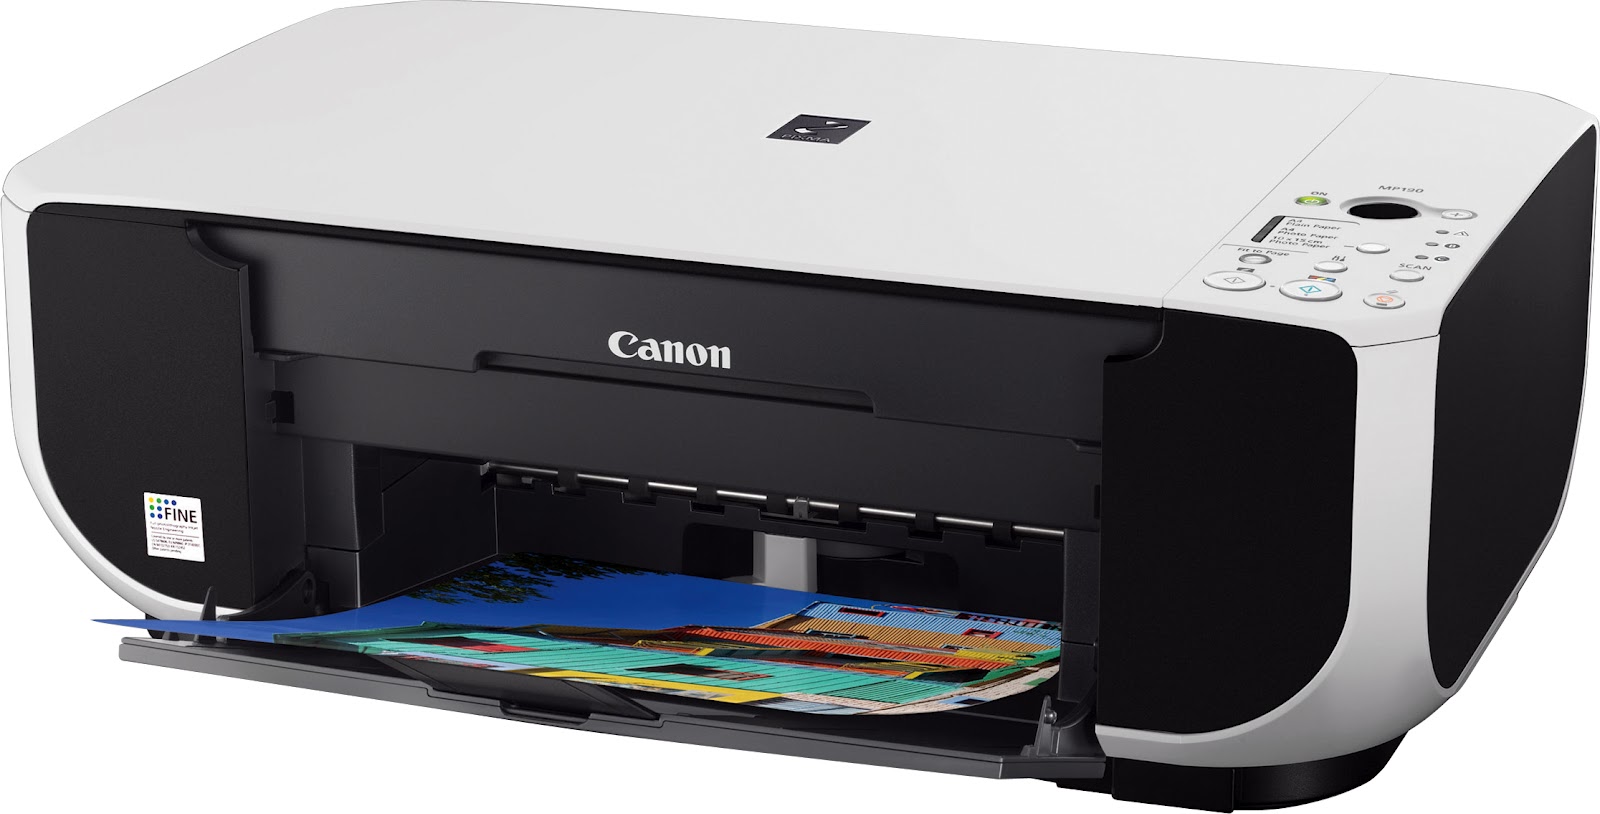 Printer Repair Experts: reset Canon Printer